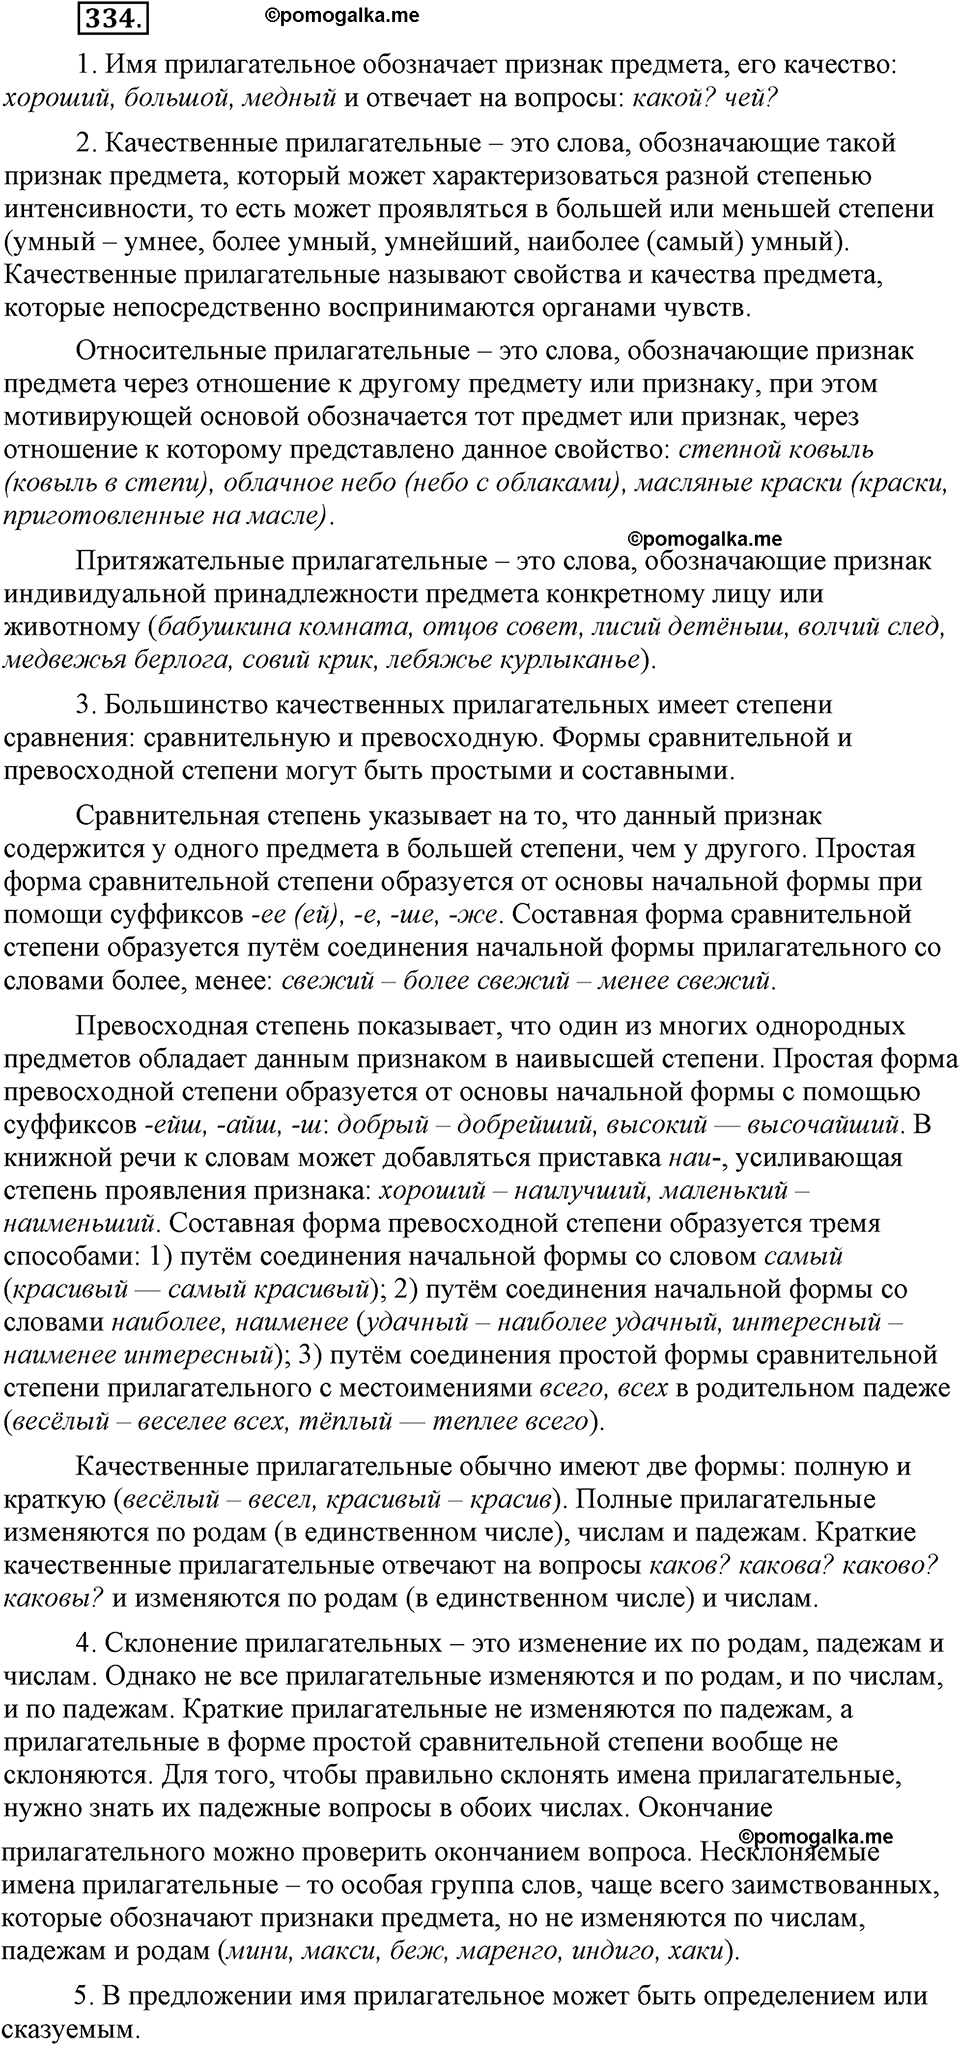 страница 153 номер 334 русский язык 9 класс Бархударов 2011 год